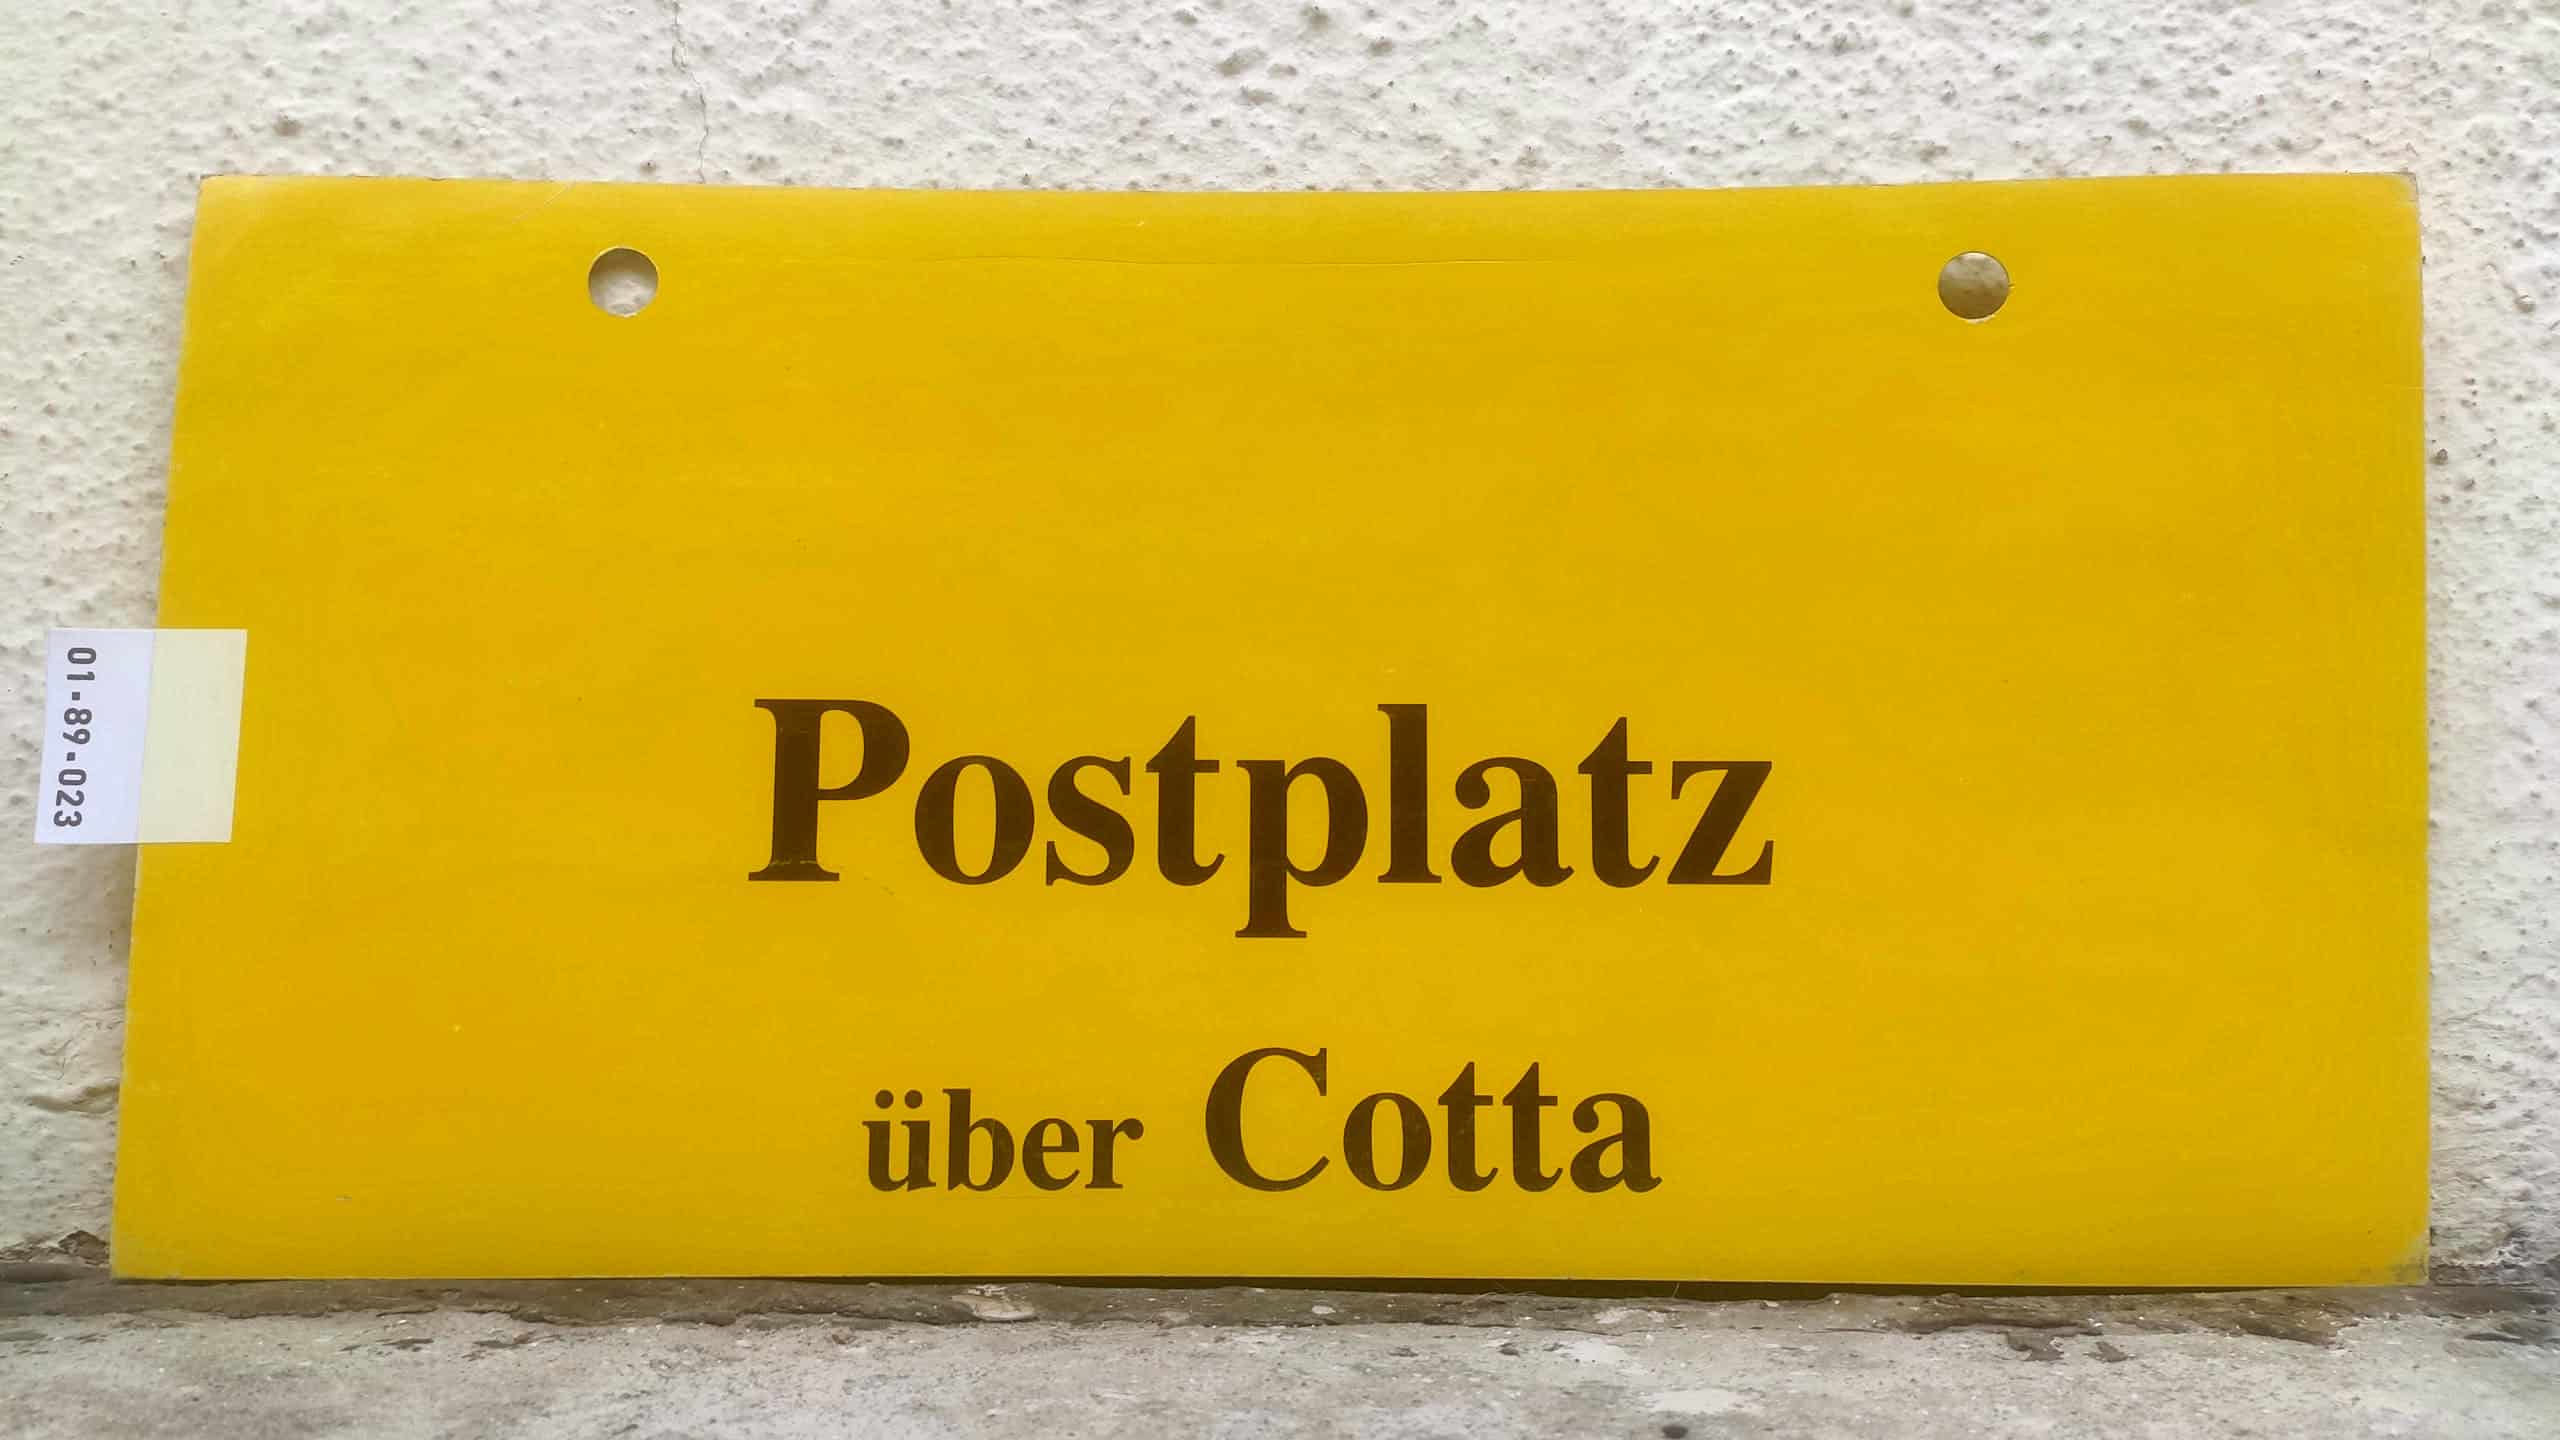 Postplatz über Cotta